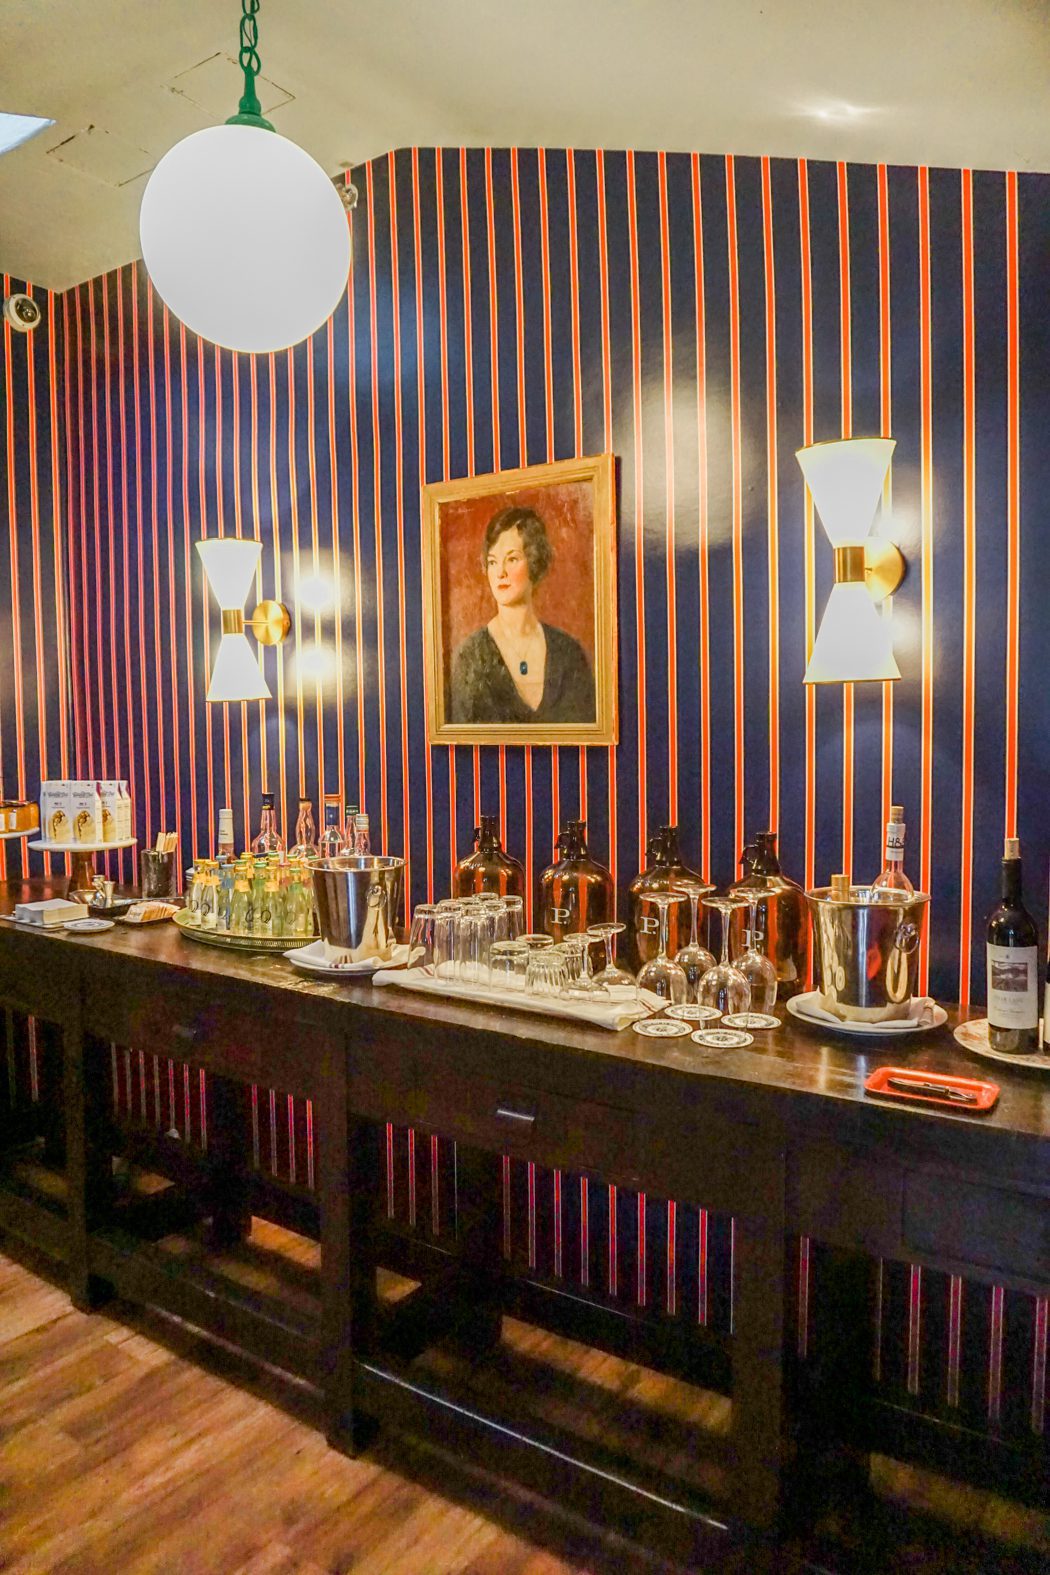 Honor Bar at Palihouse Santa Barbara